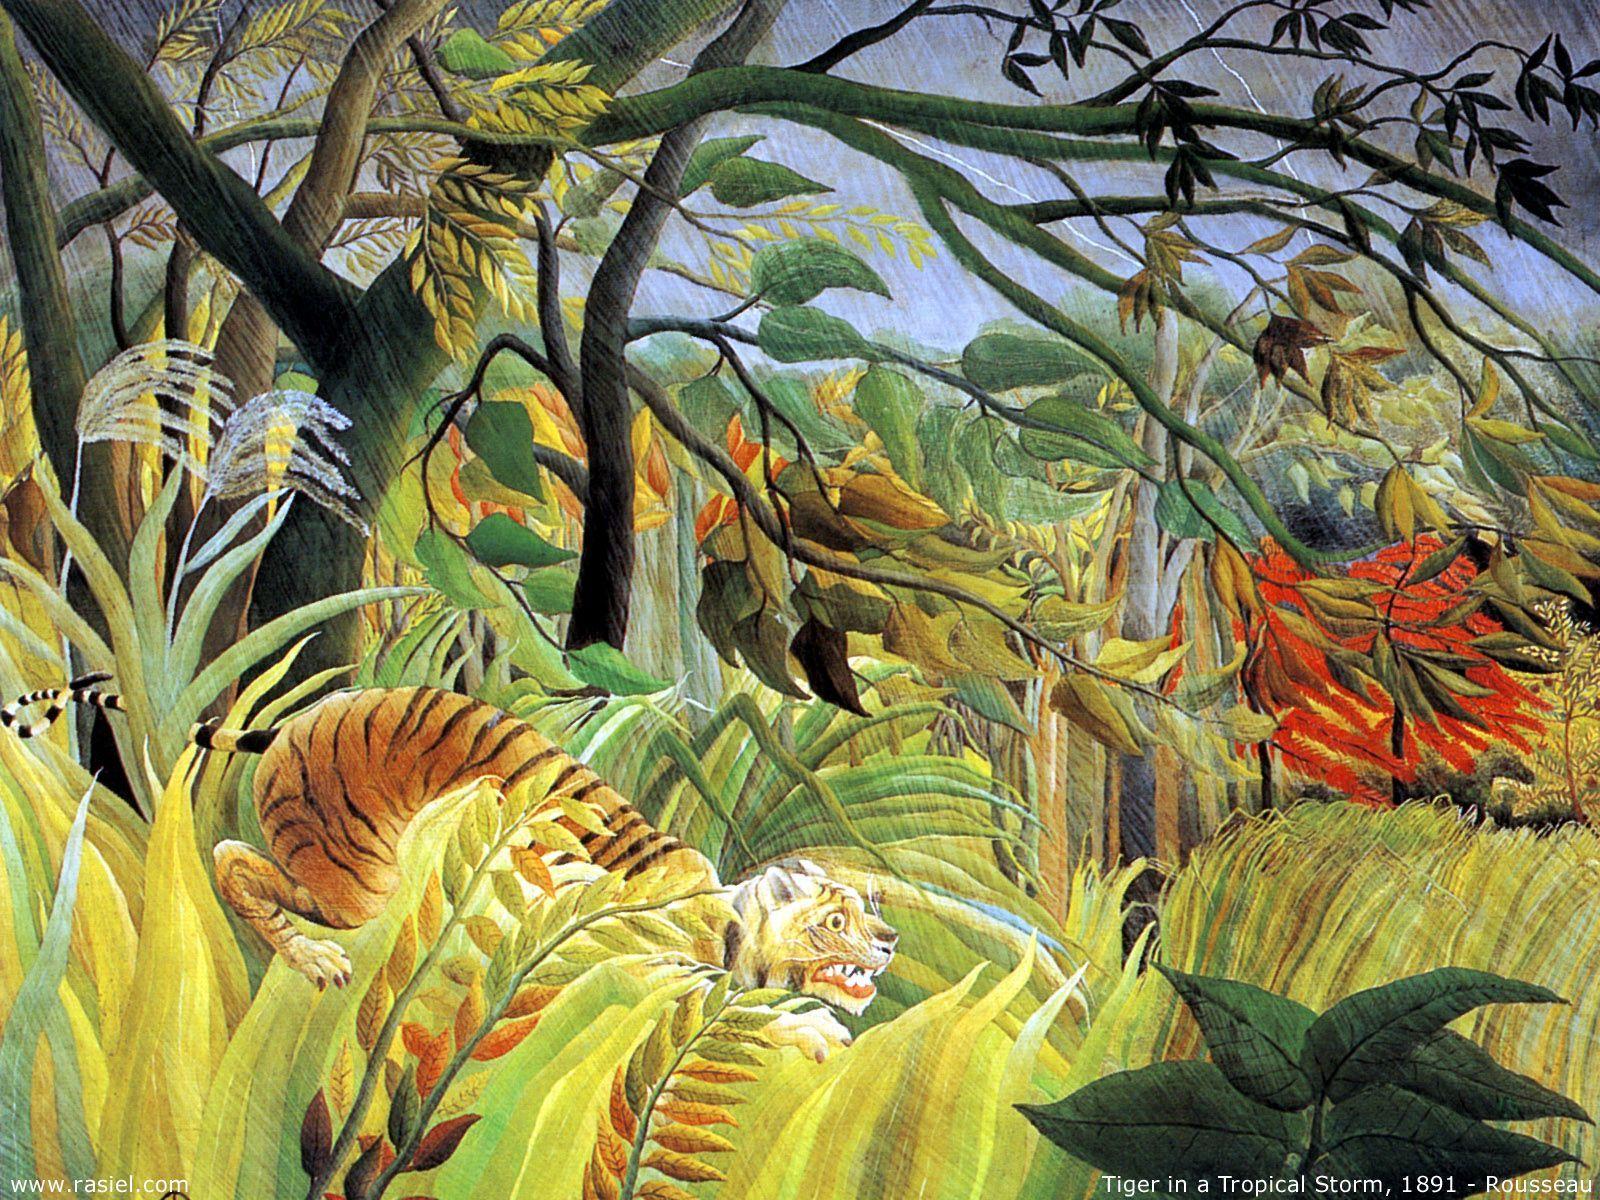 دانلود عکس ببر وحشی جنگل از آنری روسو نقاش خودآموخته فرانسوی 